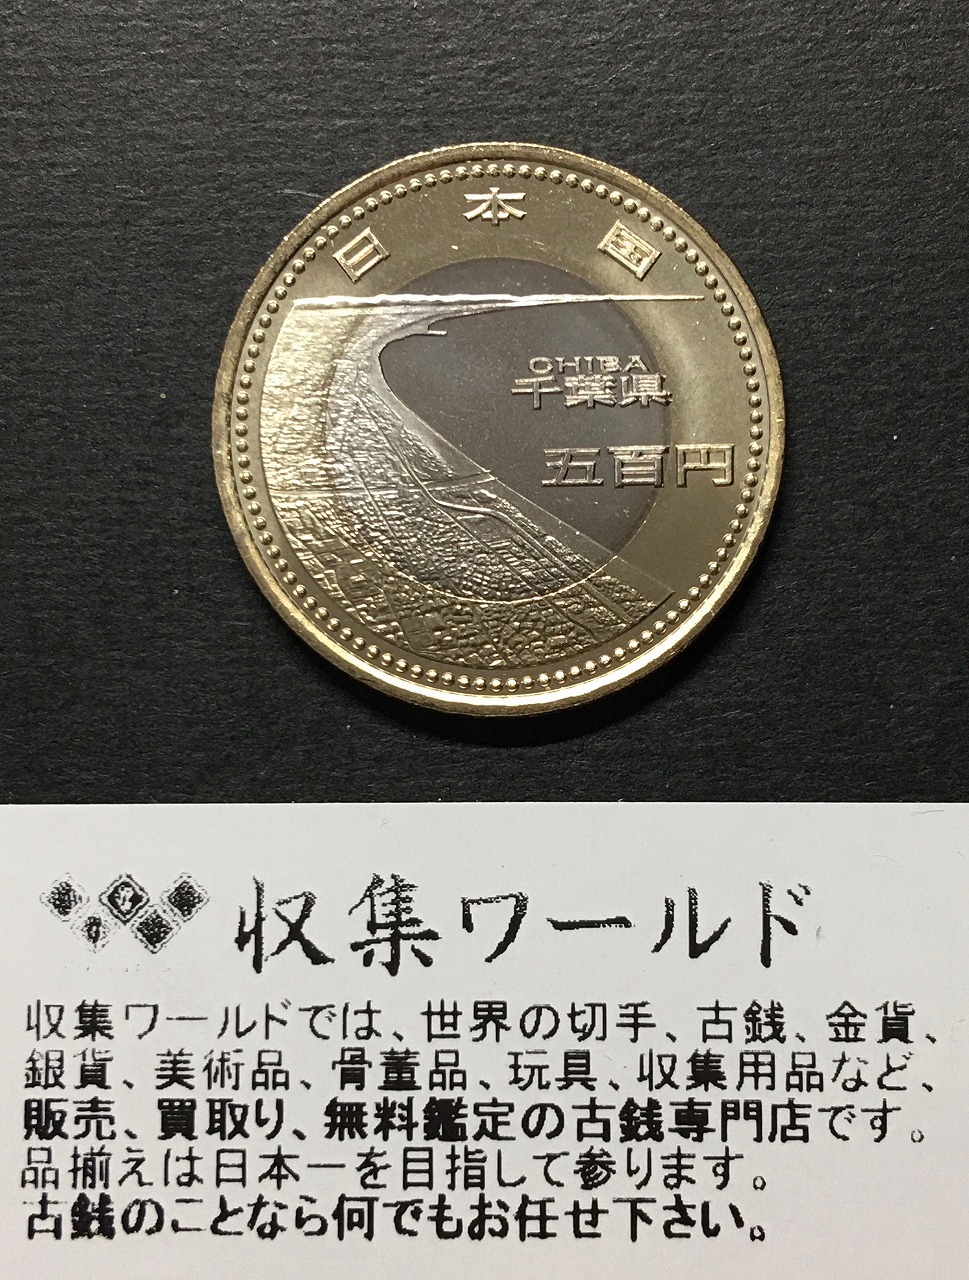 地方自治法施行 60周年記念 500円 バイカラー・クラッドプルーフ貨幣 